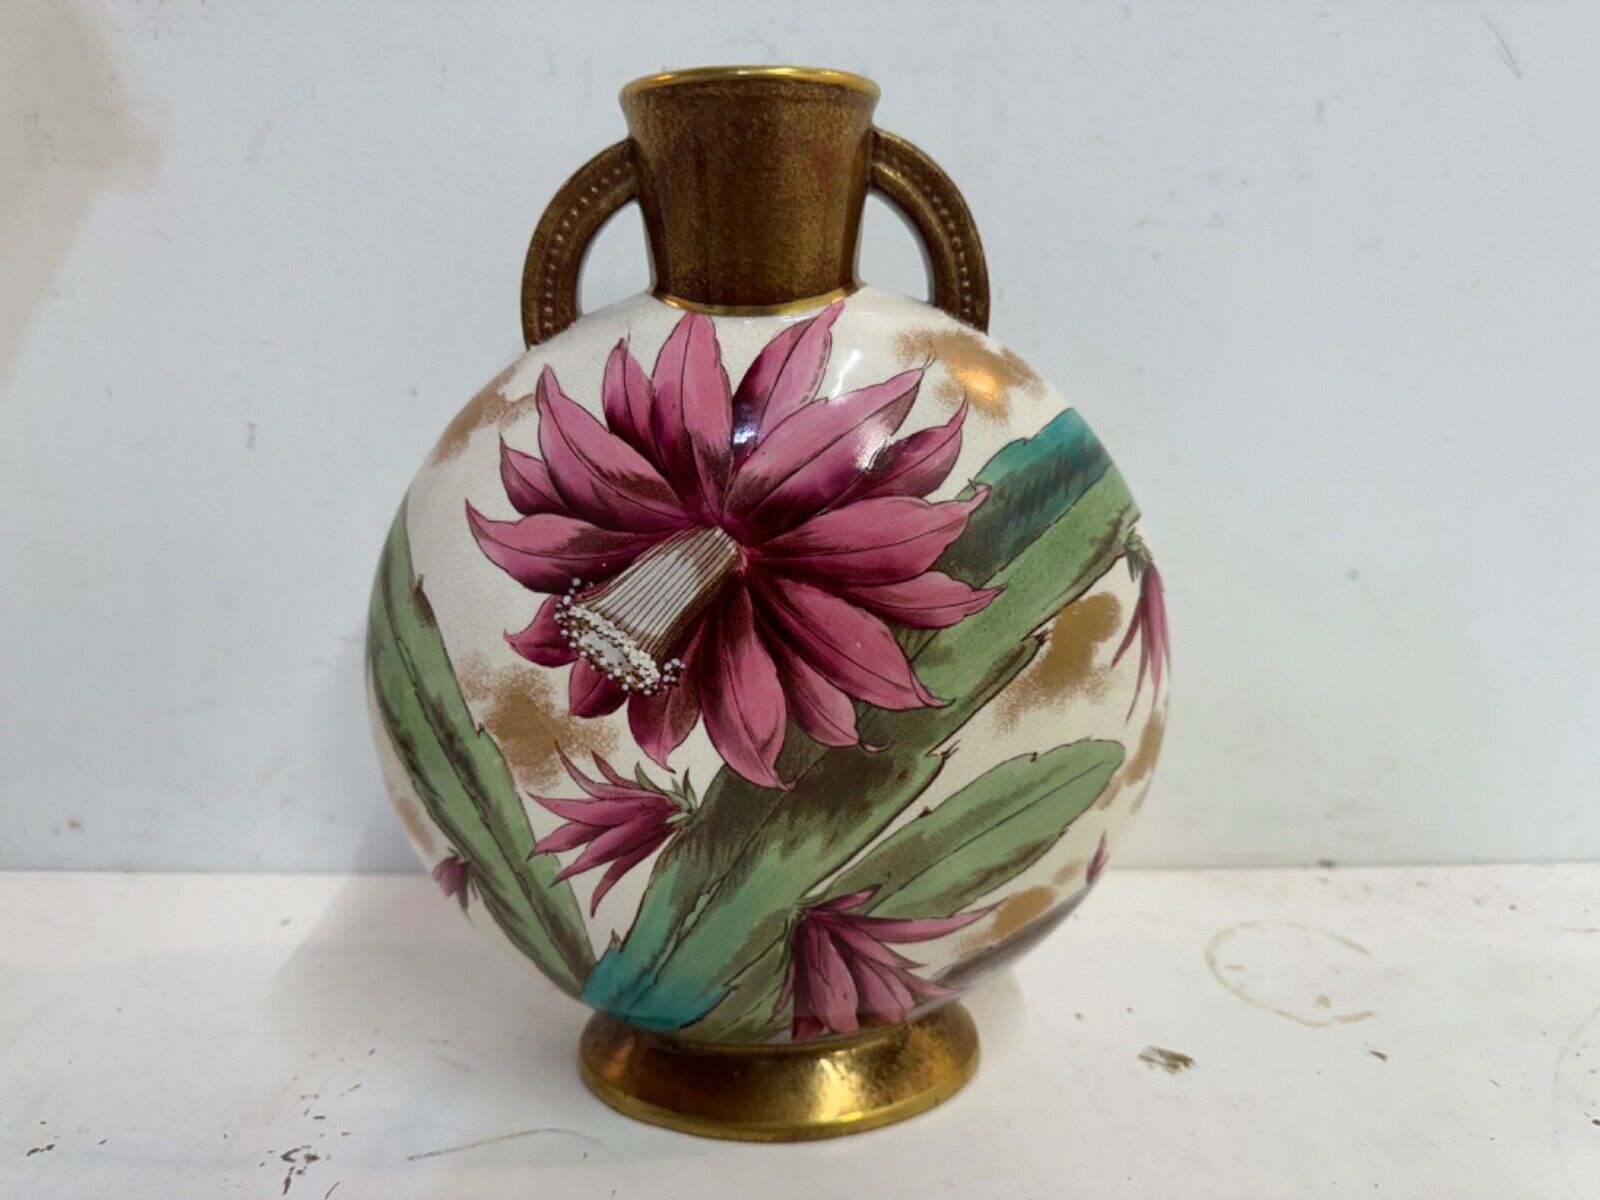 Antique Adderley Porcelain Vase with Floral Decorations